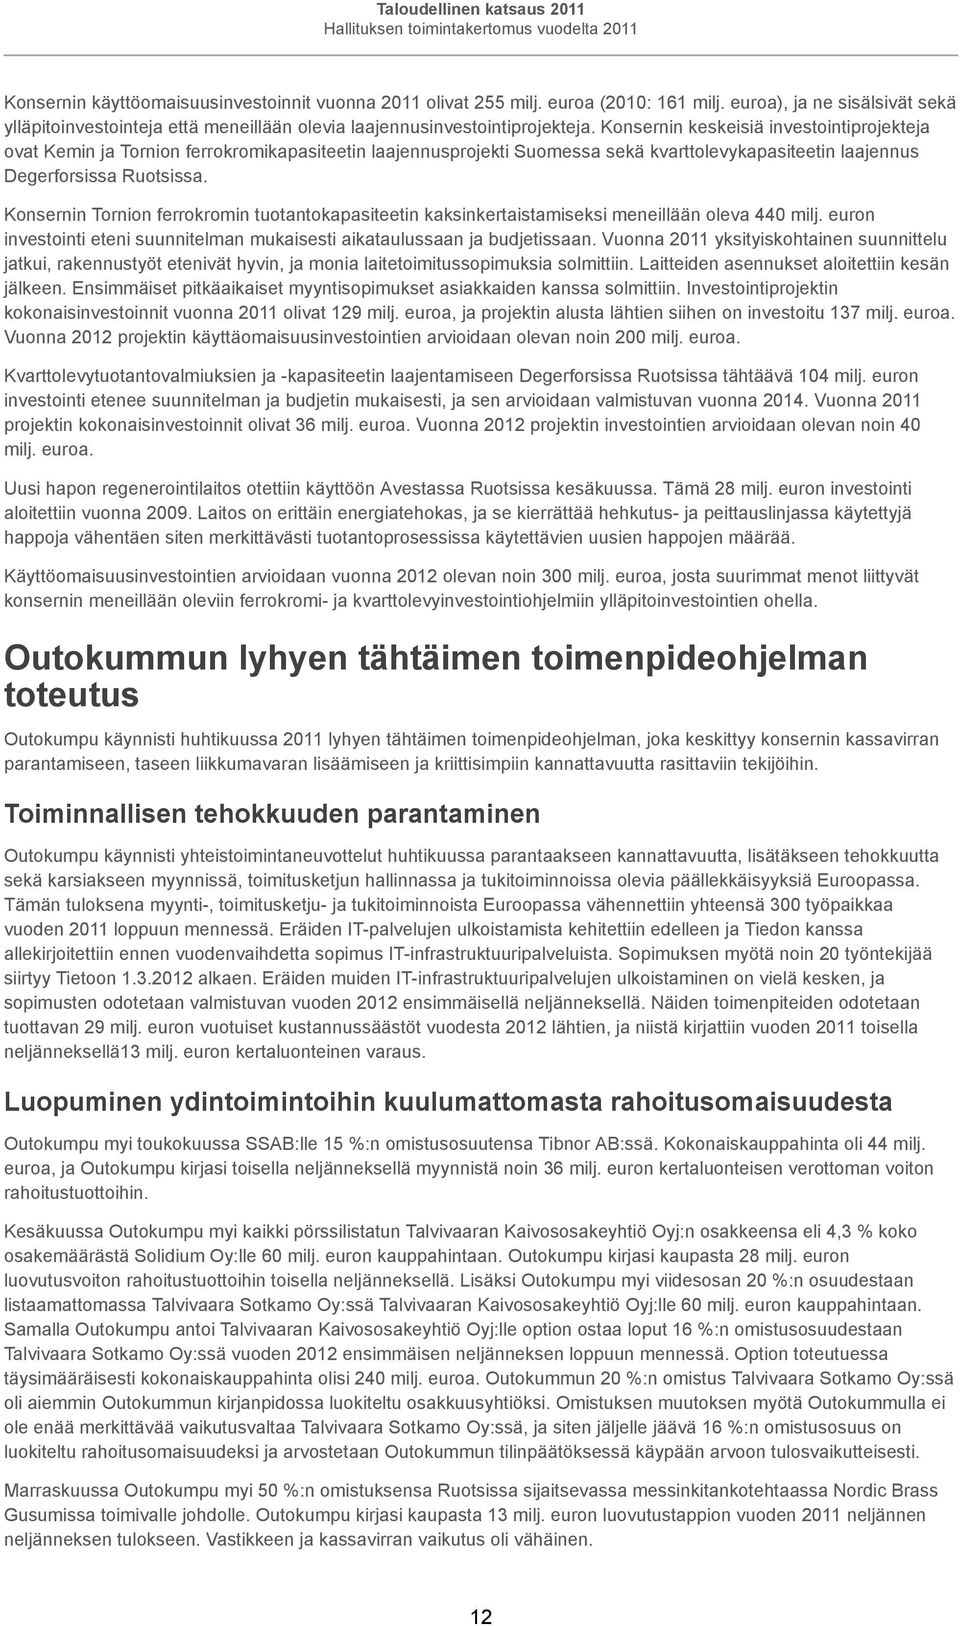 Konsernin keskeisiä investointiprojekteja ovat Kemin ja Tornion ferrokromikapasiteetin laajennusprojekti Suomessa sekä kvarttolevykapasiteetin laajennus Degerforsissa Ruotsissa.